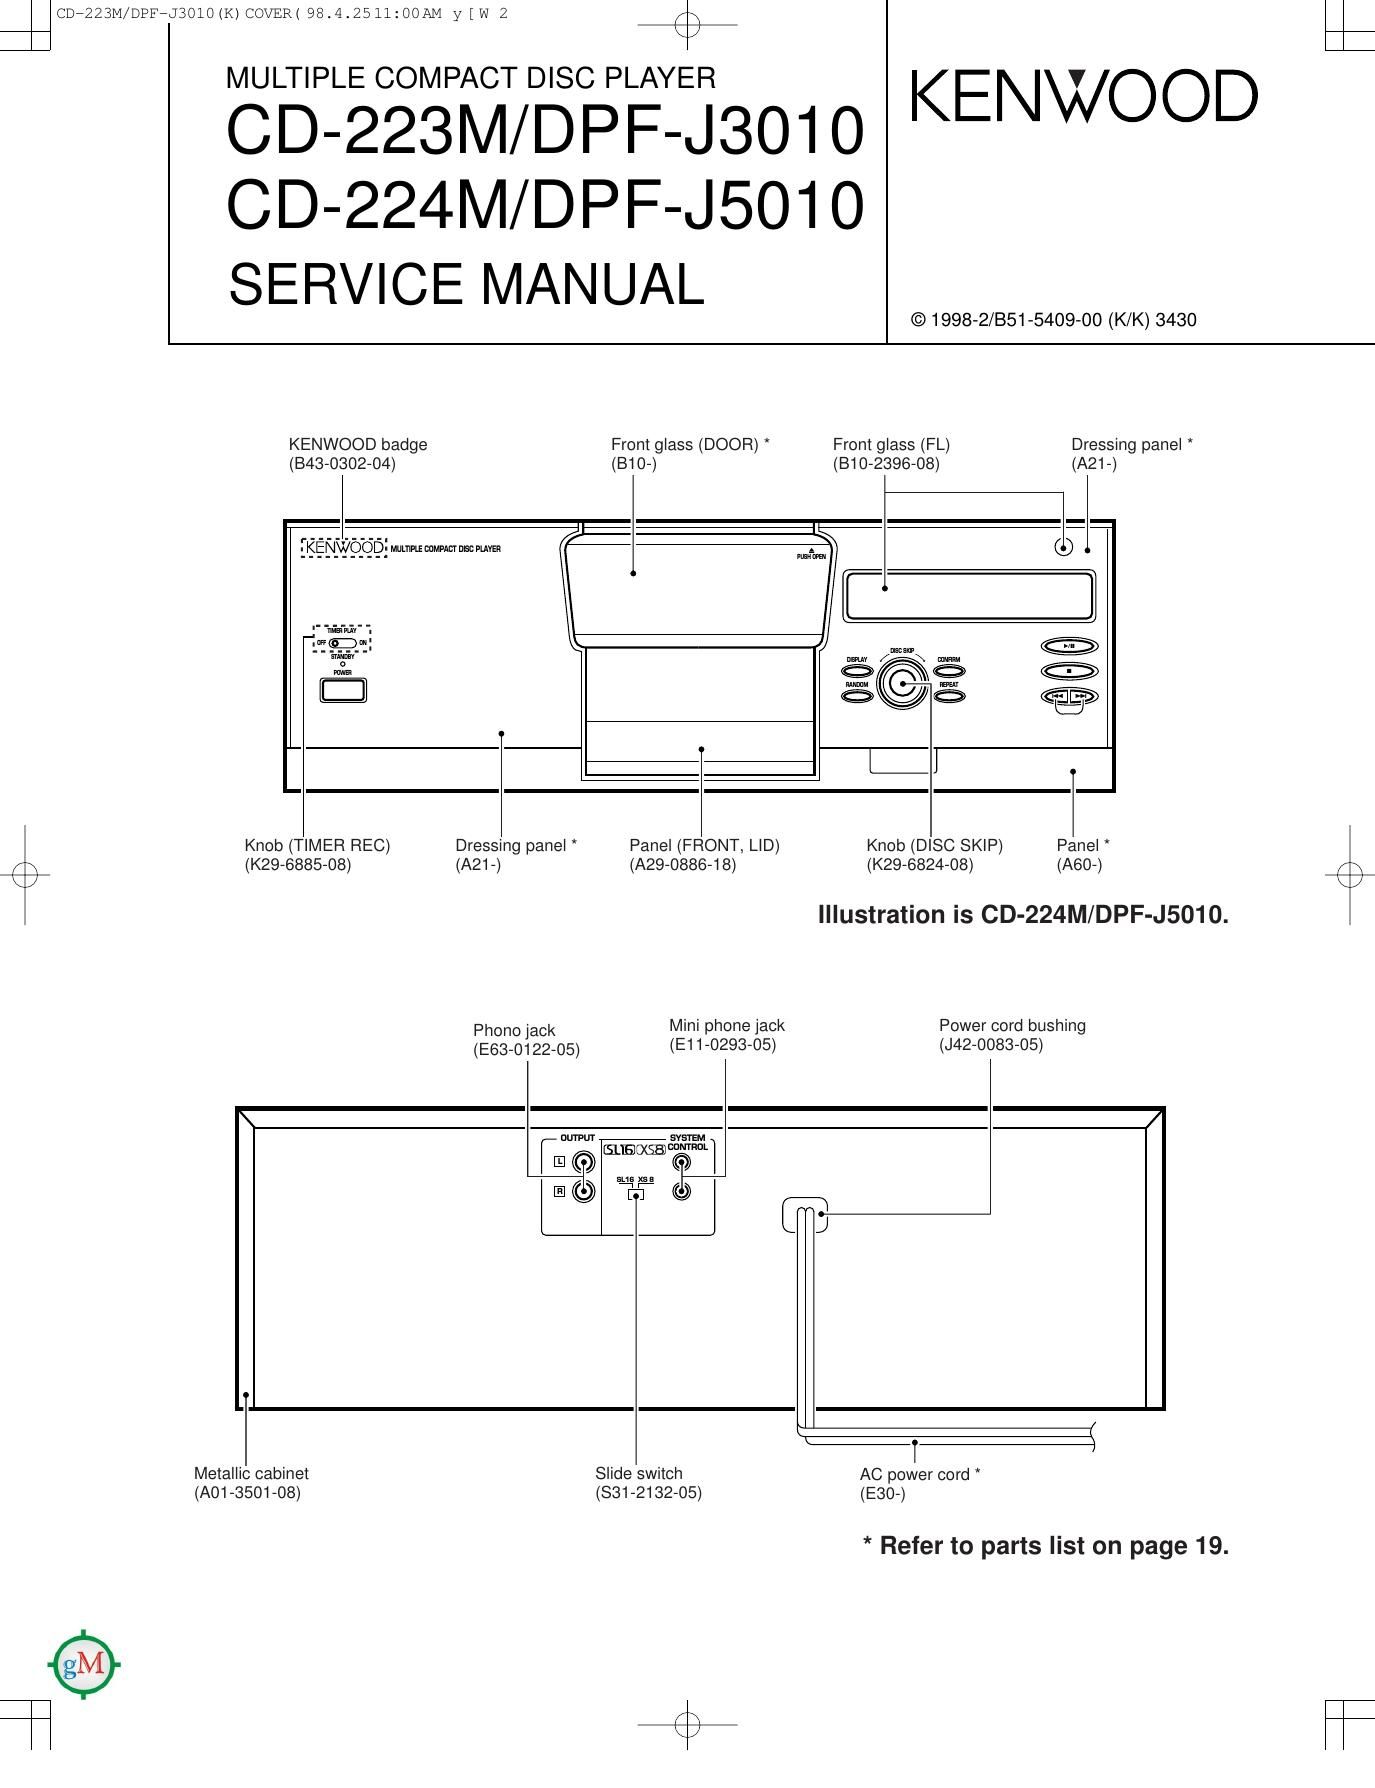 Kenwood CD 224 M Service Manual